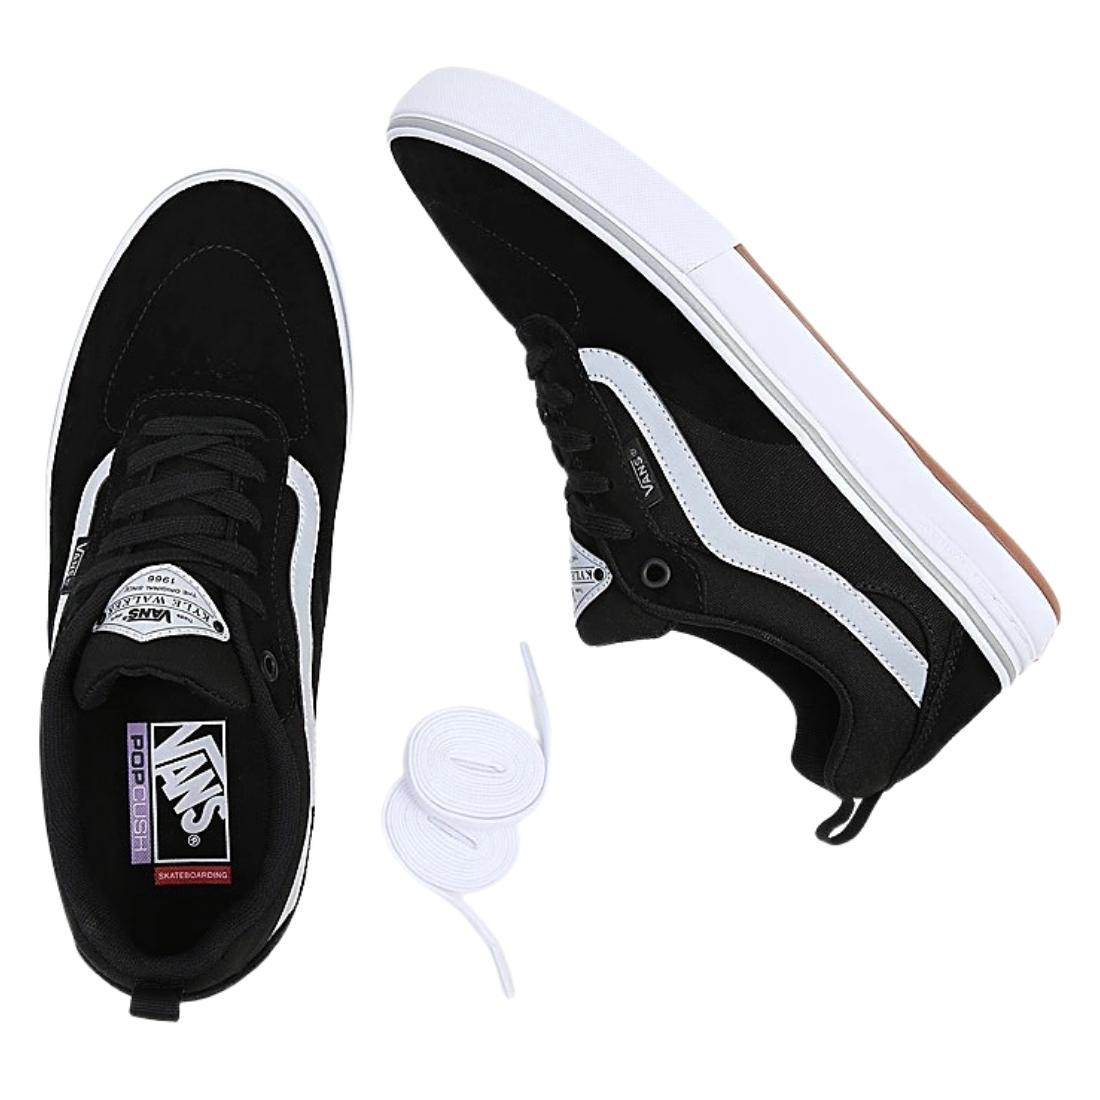 Vans Kyle Walker Pro Skate Shoes - Black Reflective - Mens Skate Shoes by Vans